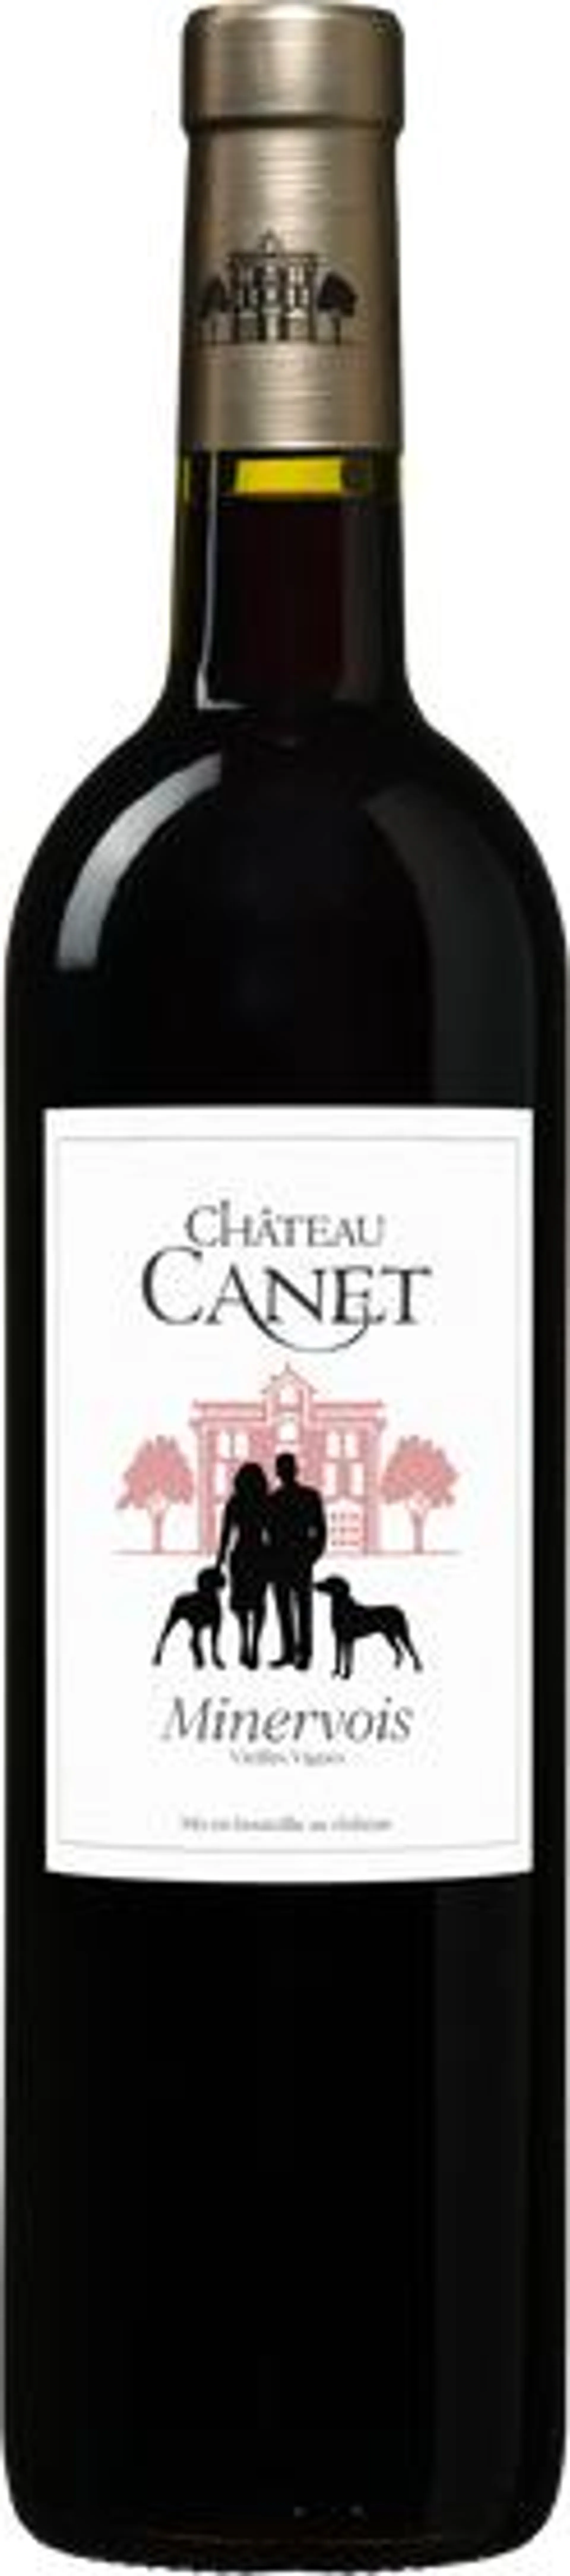 Château Canet Rouge 'Vieilles Vignes' Minervois